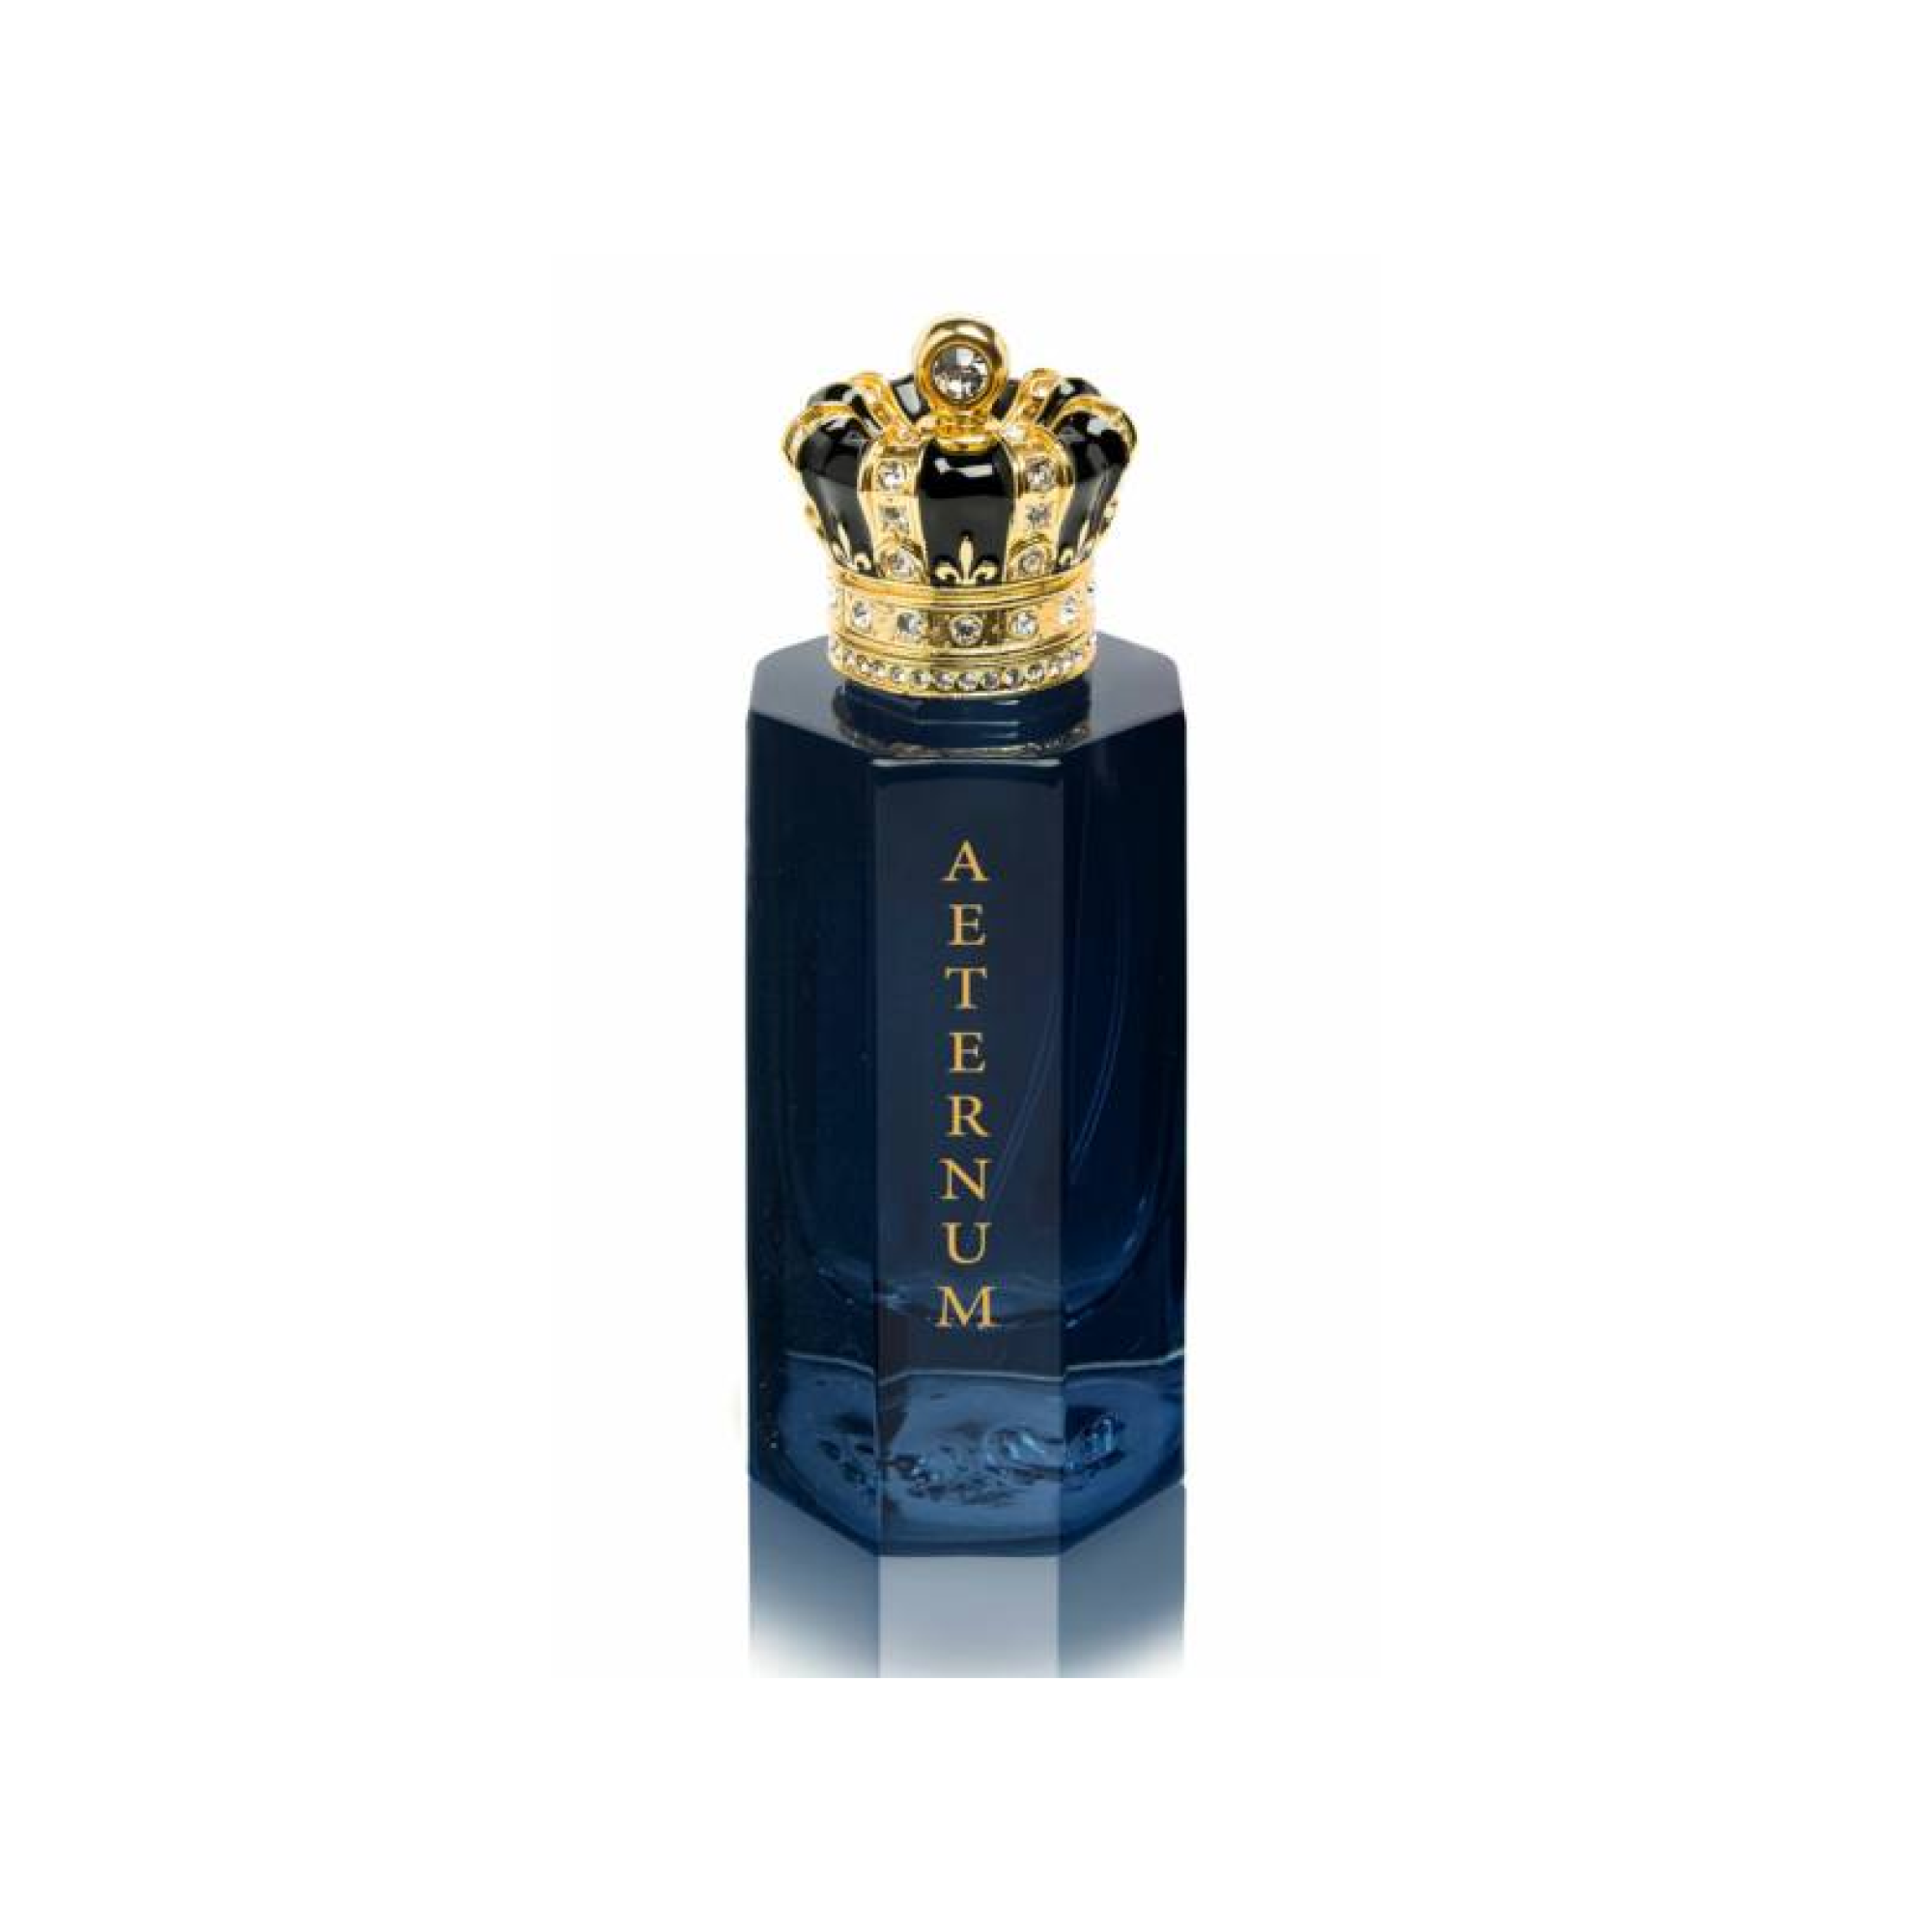 AETERNUM 3.4oz Extrait de Parfum – So Avant Garde